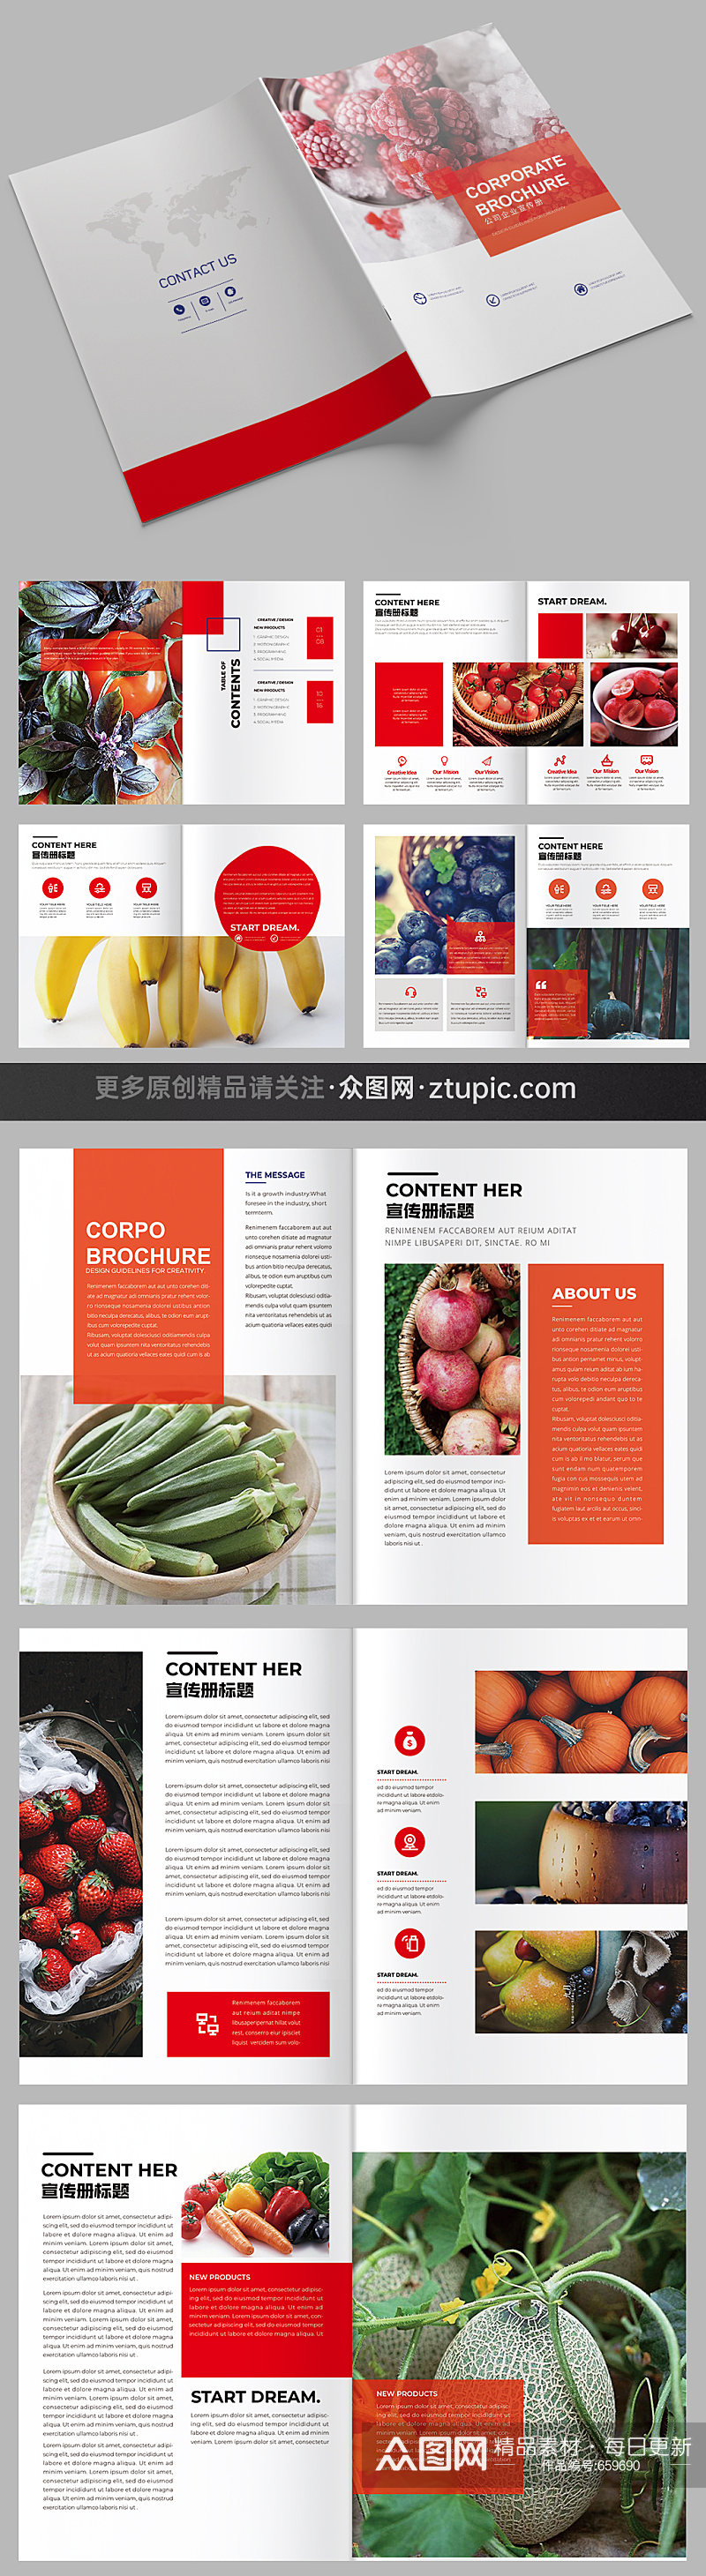 水果蔬菜画册农产品画册设计效果图素材